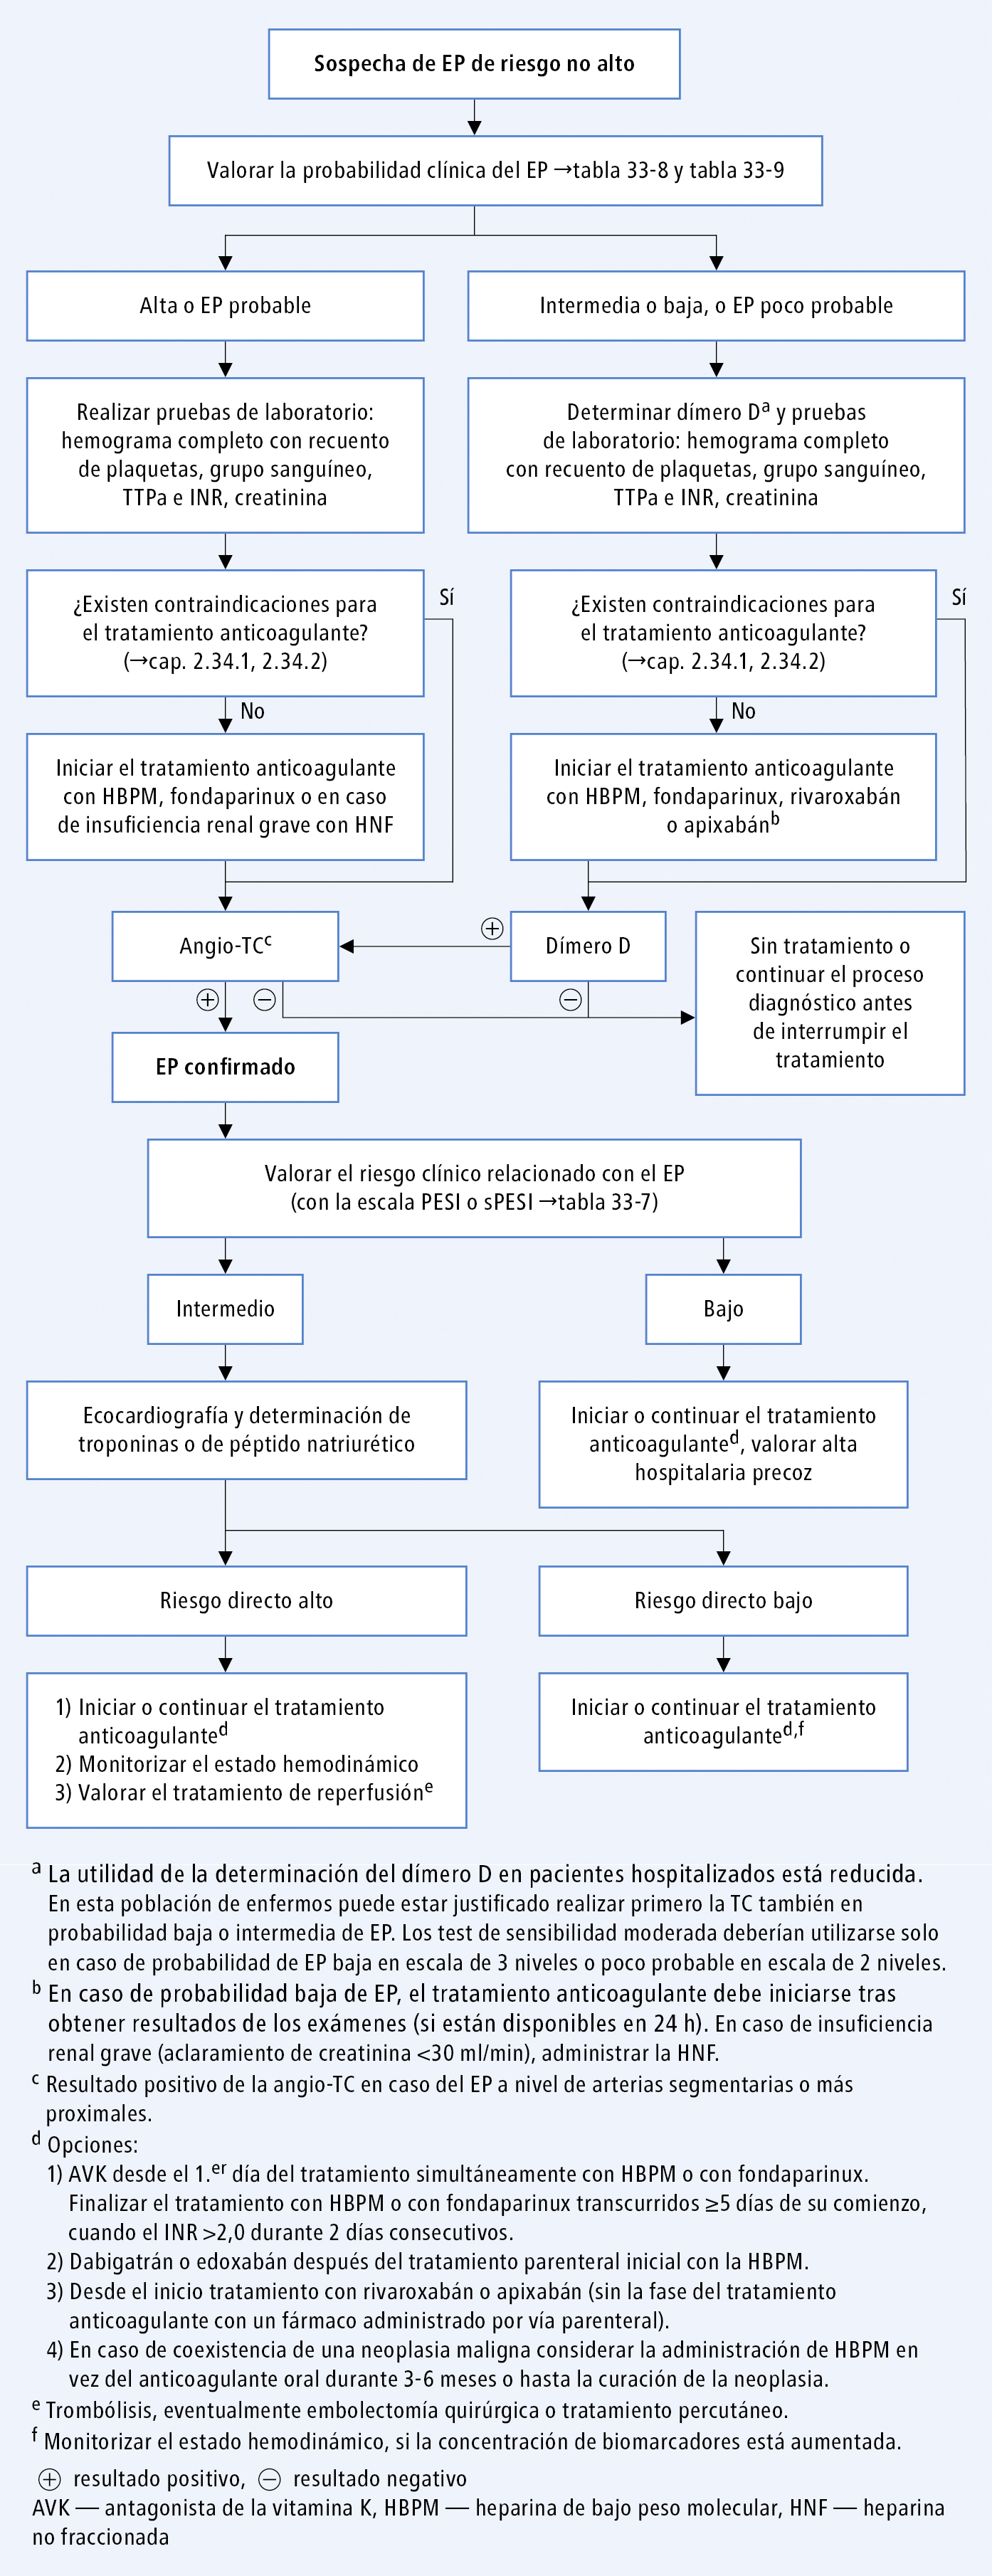  Algoritmo de diagnóstico y tratamiento del embolismo pulmonar de riesgo no alto (según las guías de la ESC 2014) 